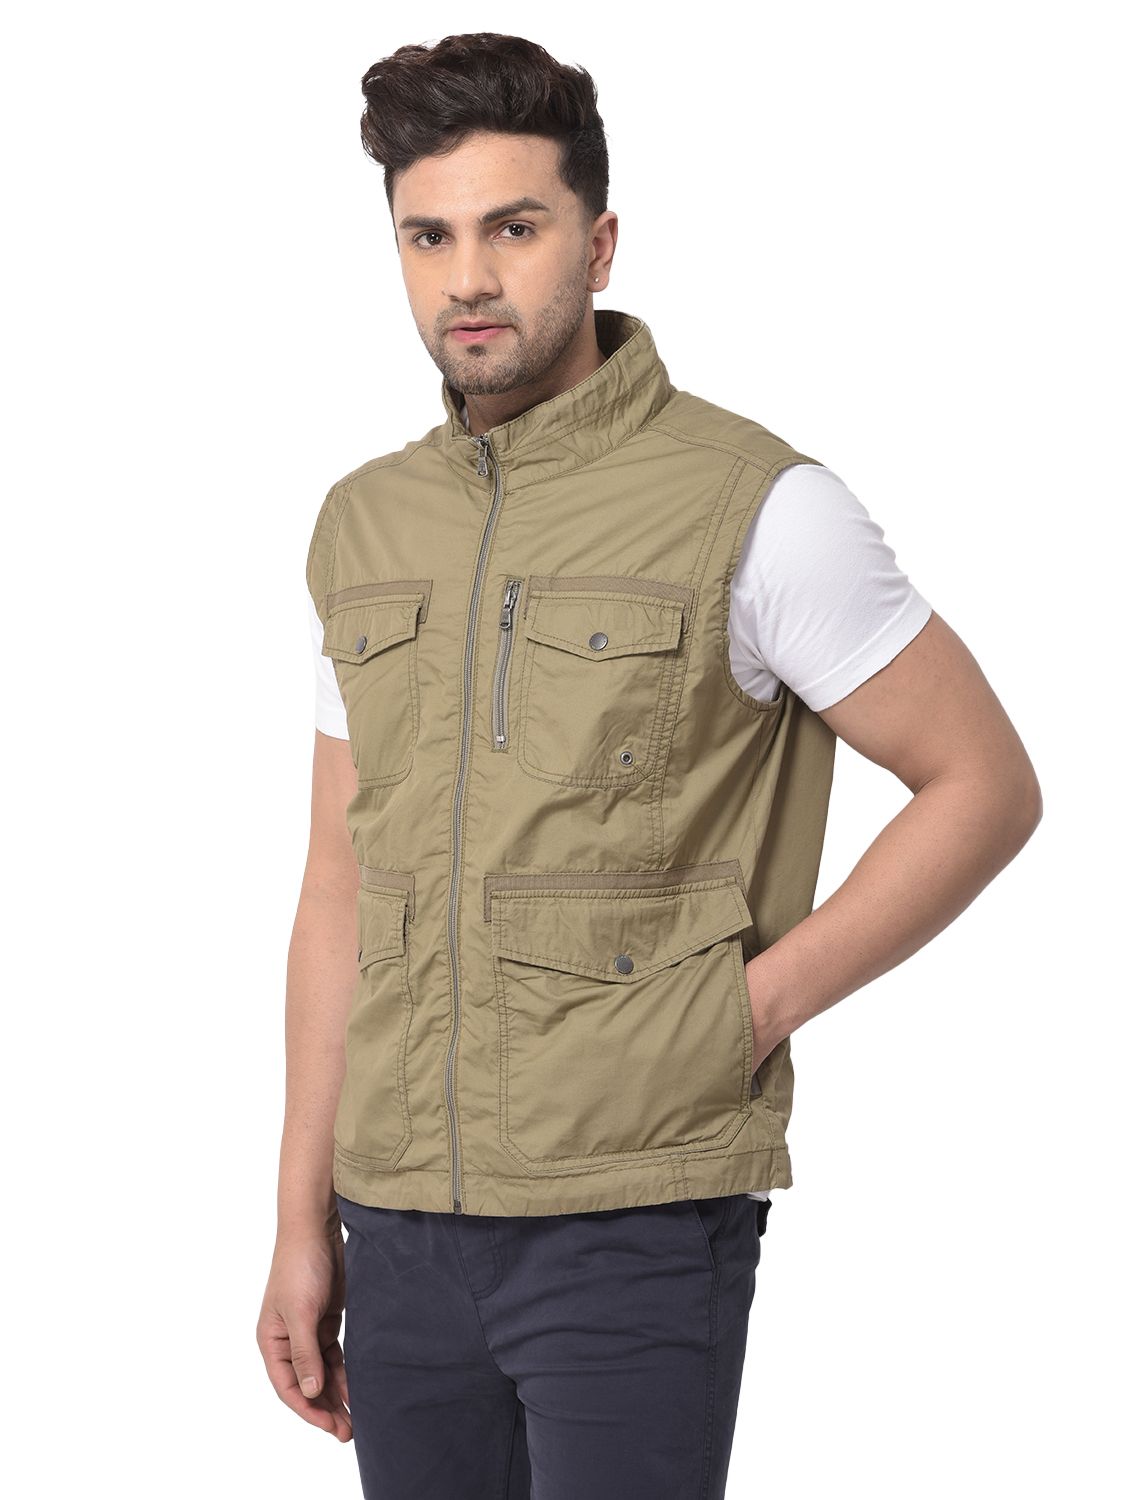 Light Olive sleeveless cotton jacket